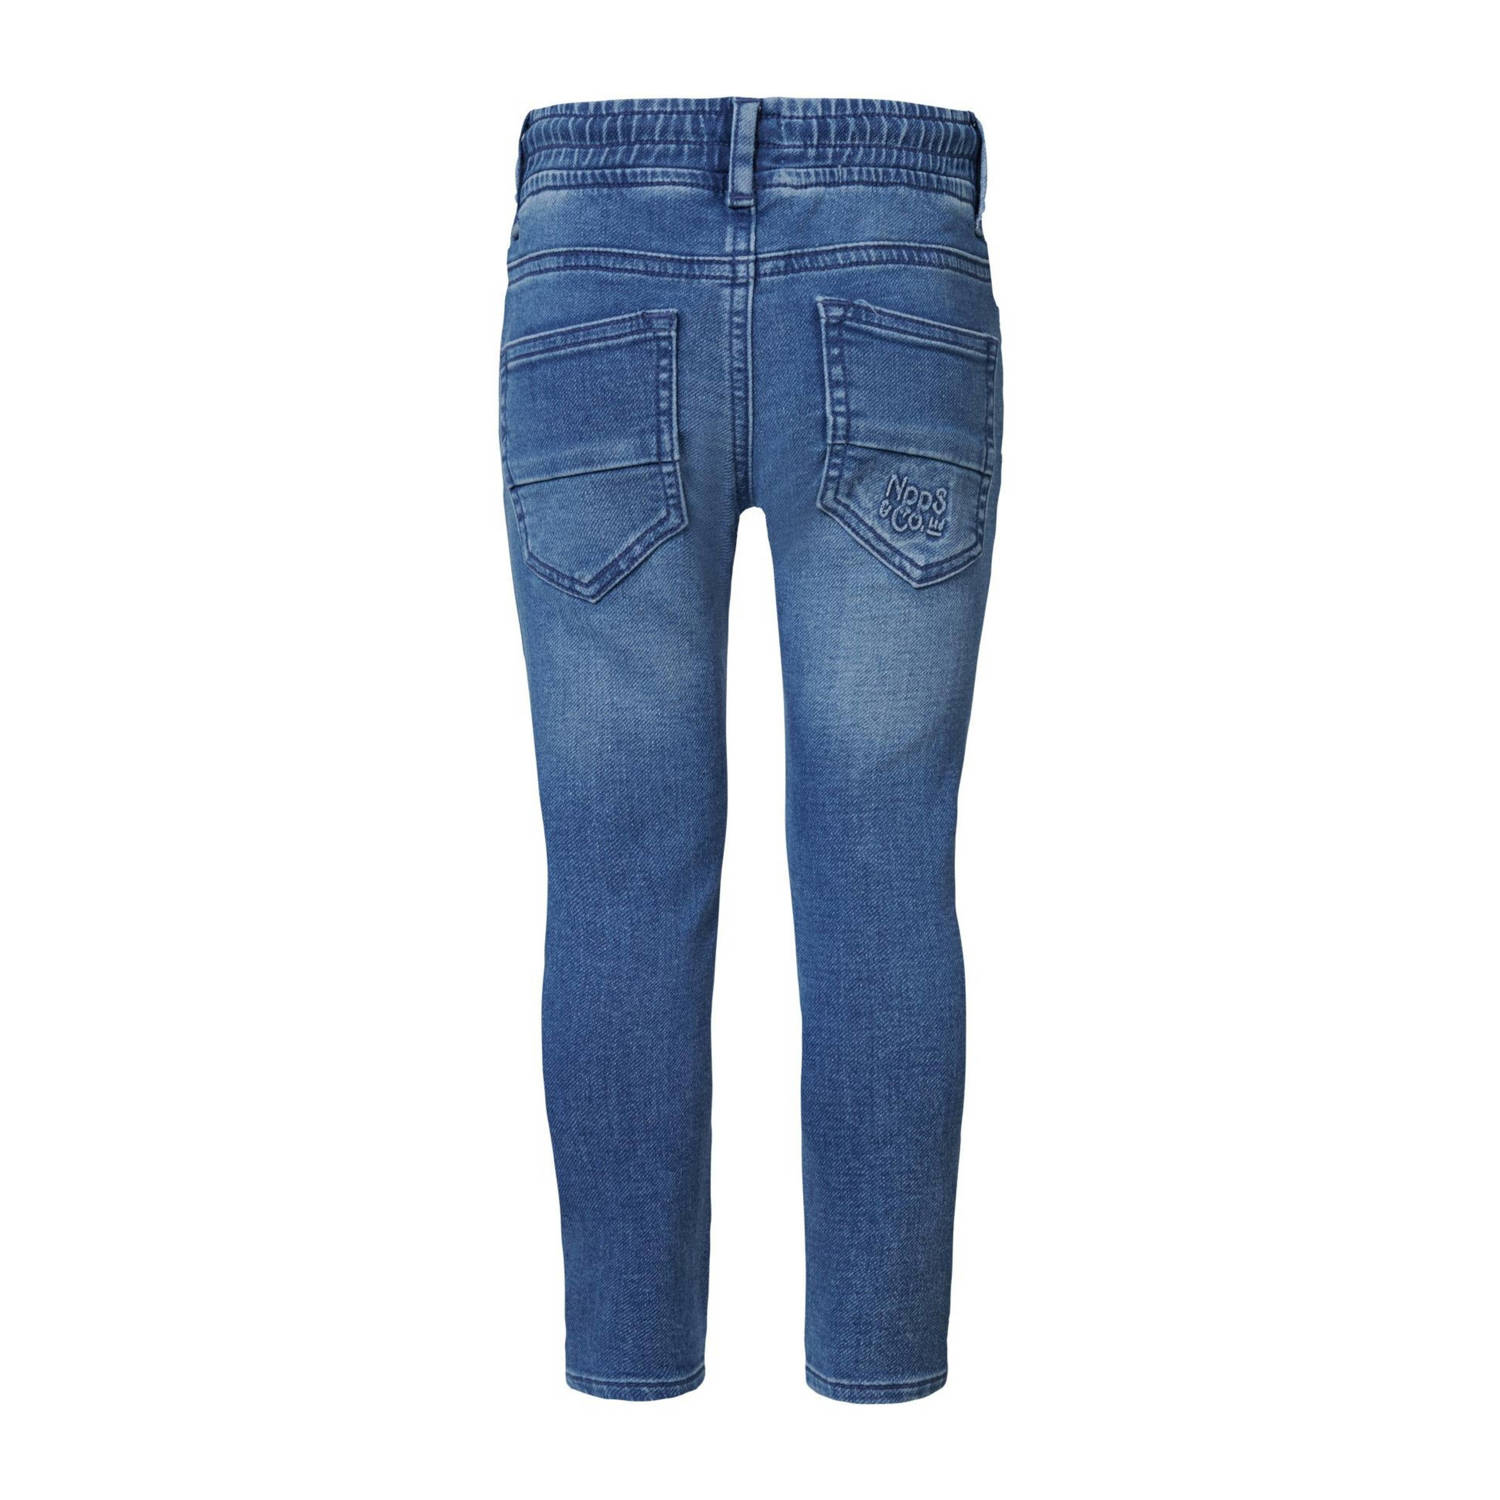 Noppies regular fit jeans Demorest dark blue denim